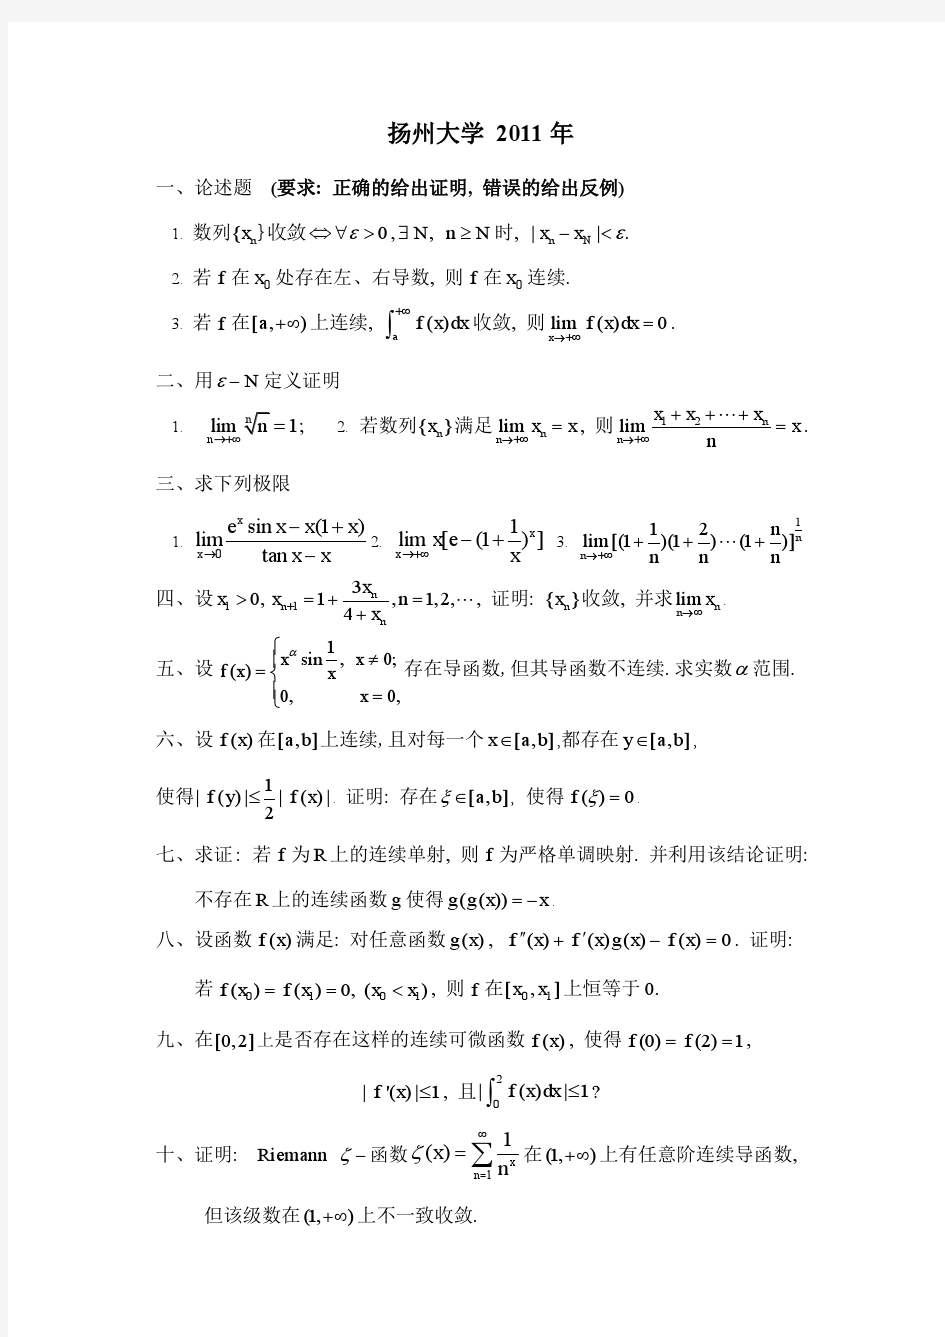 扬州大学2003-2011年数学分析研究生入学考试试题